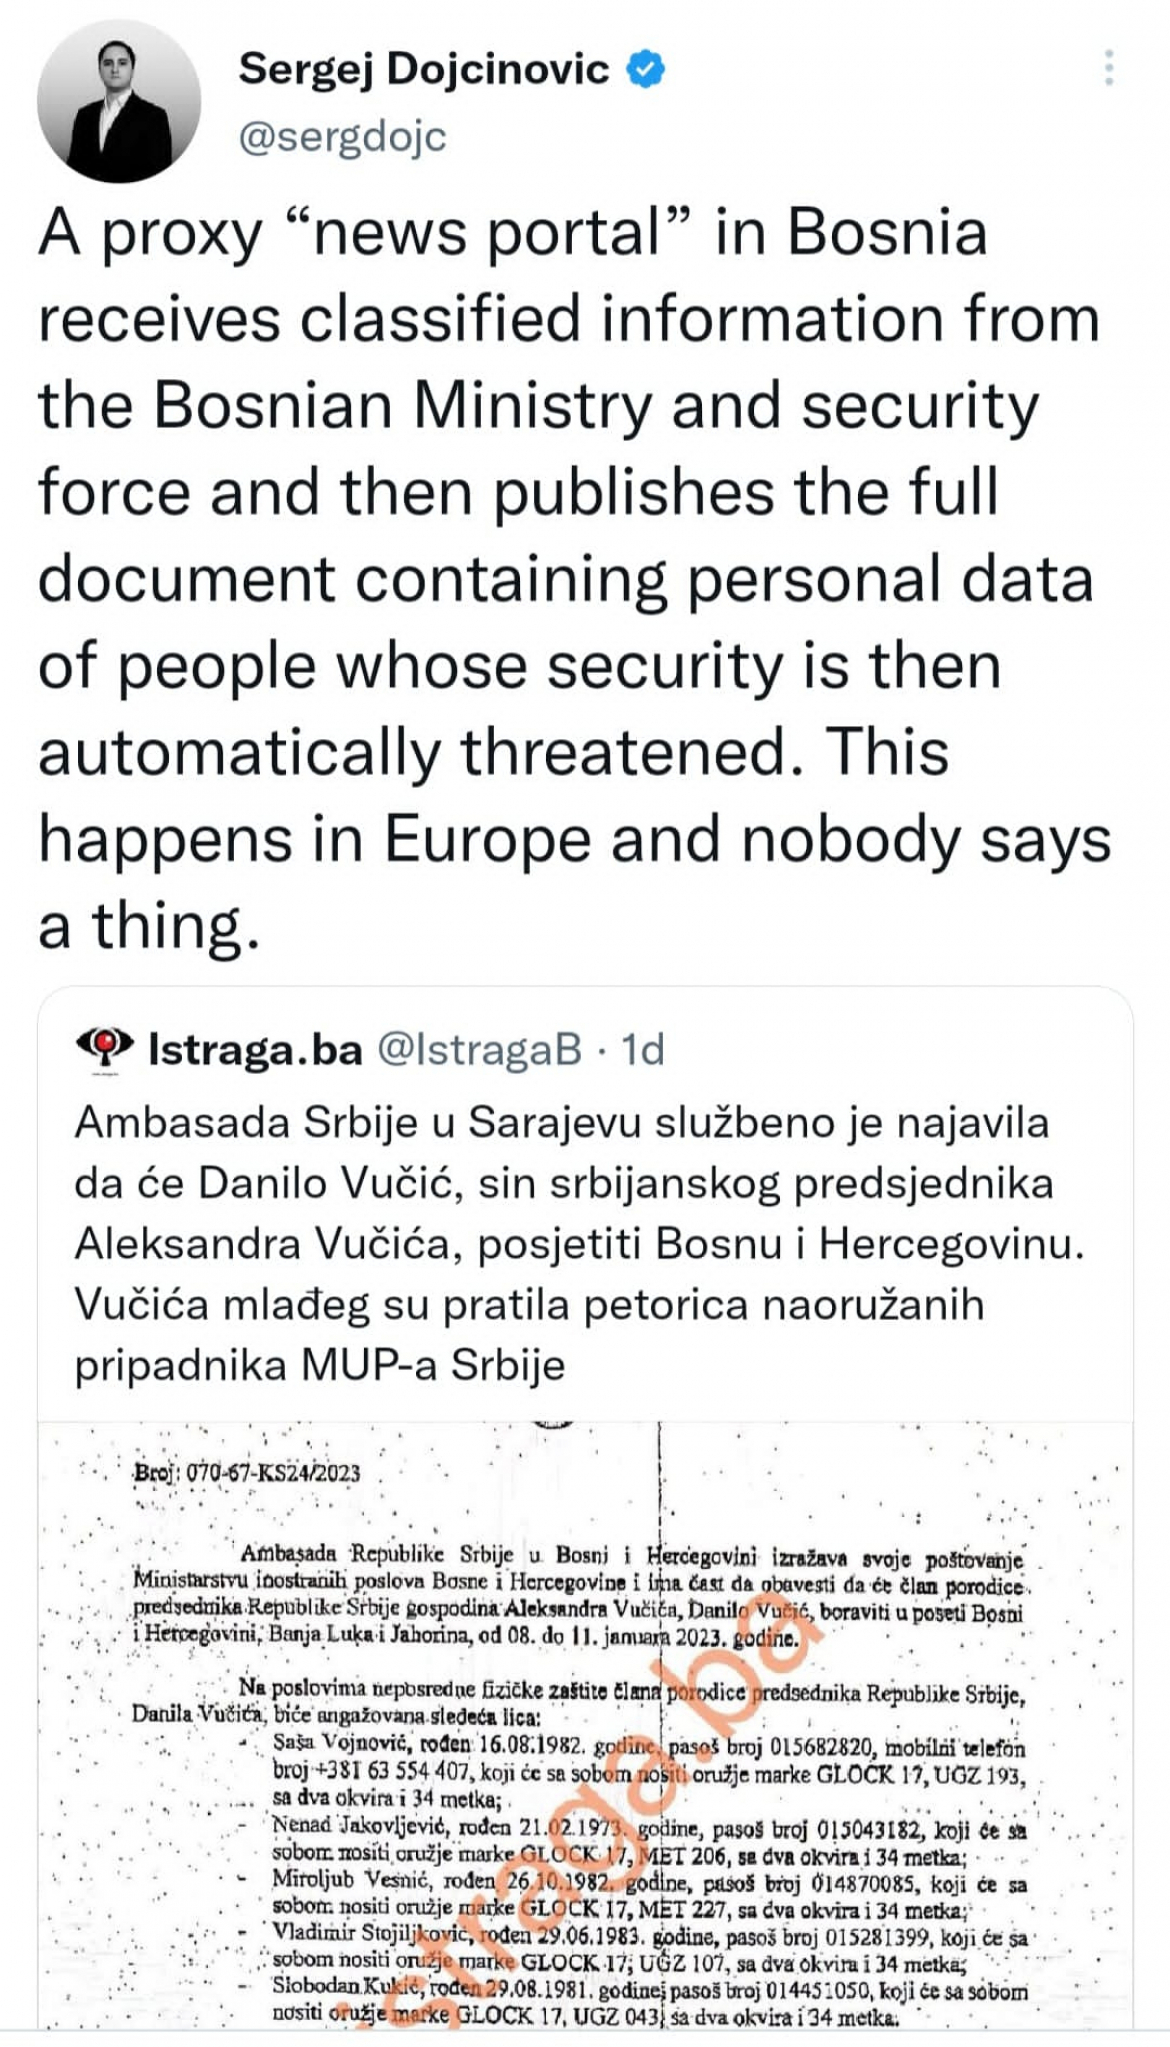 SKANDAL! Bosansko-hercegovačko ministarstvo i bezbednosne snage ugrozile bezbednost Danila Vučića (FOTO)